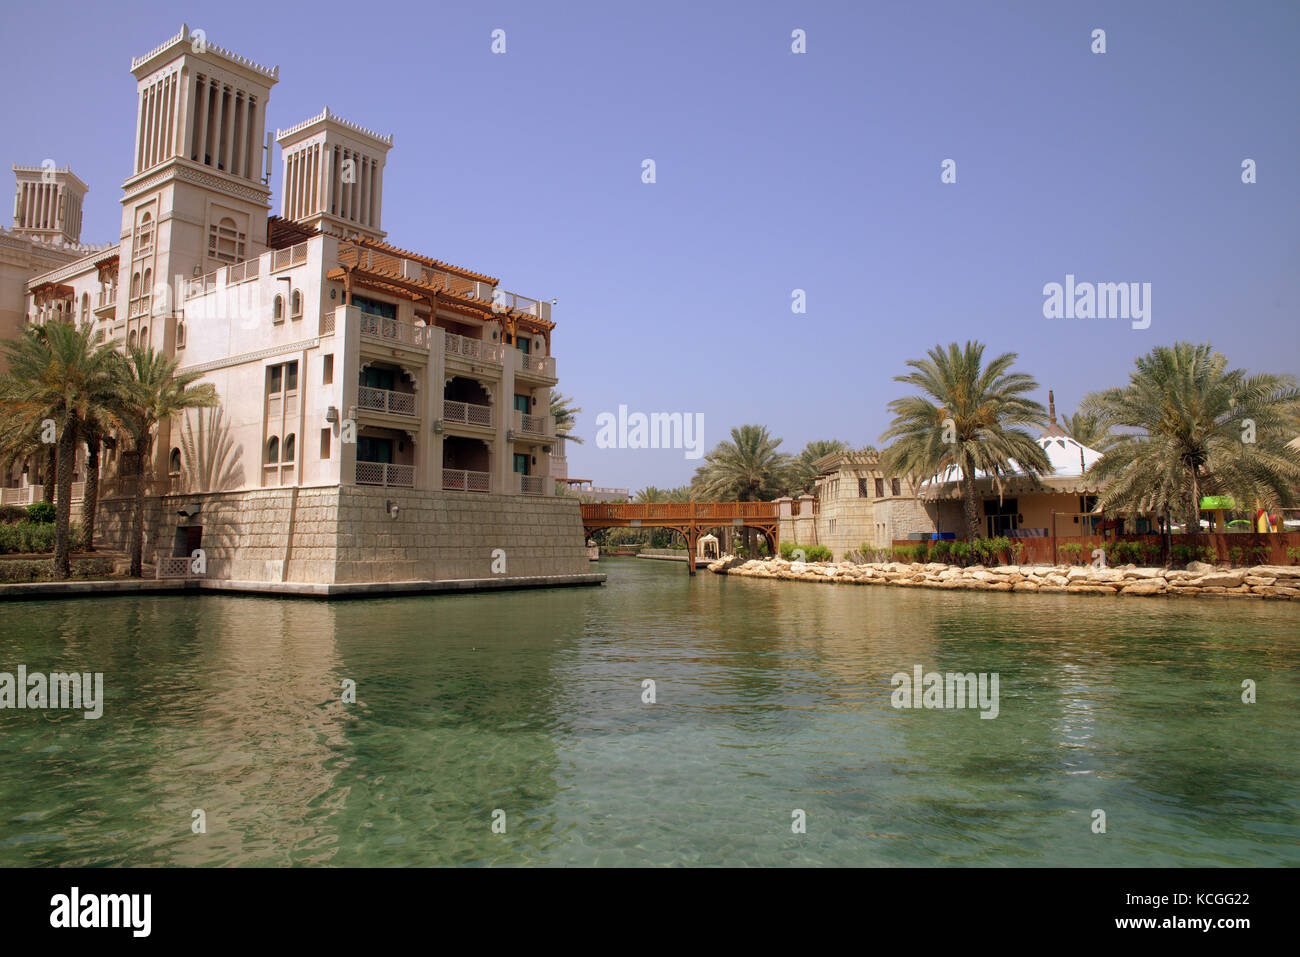 Suivant les canaux d'hôtels de luxe à Jumeirah, Dubai, Émirats arabes unis Banque D'Images